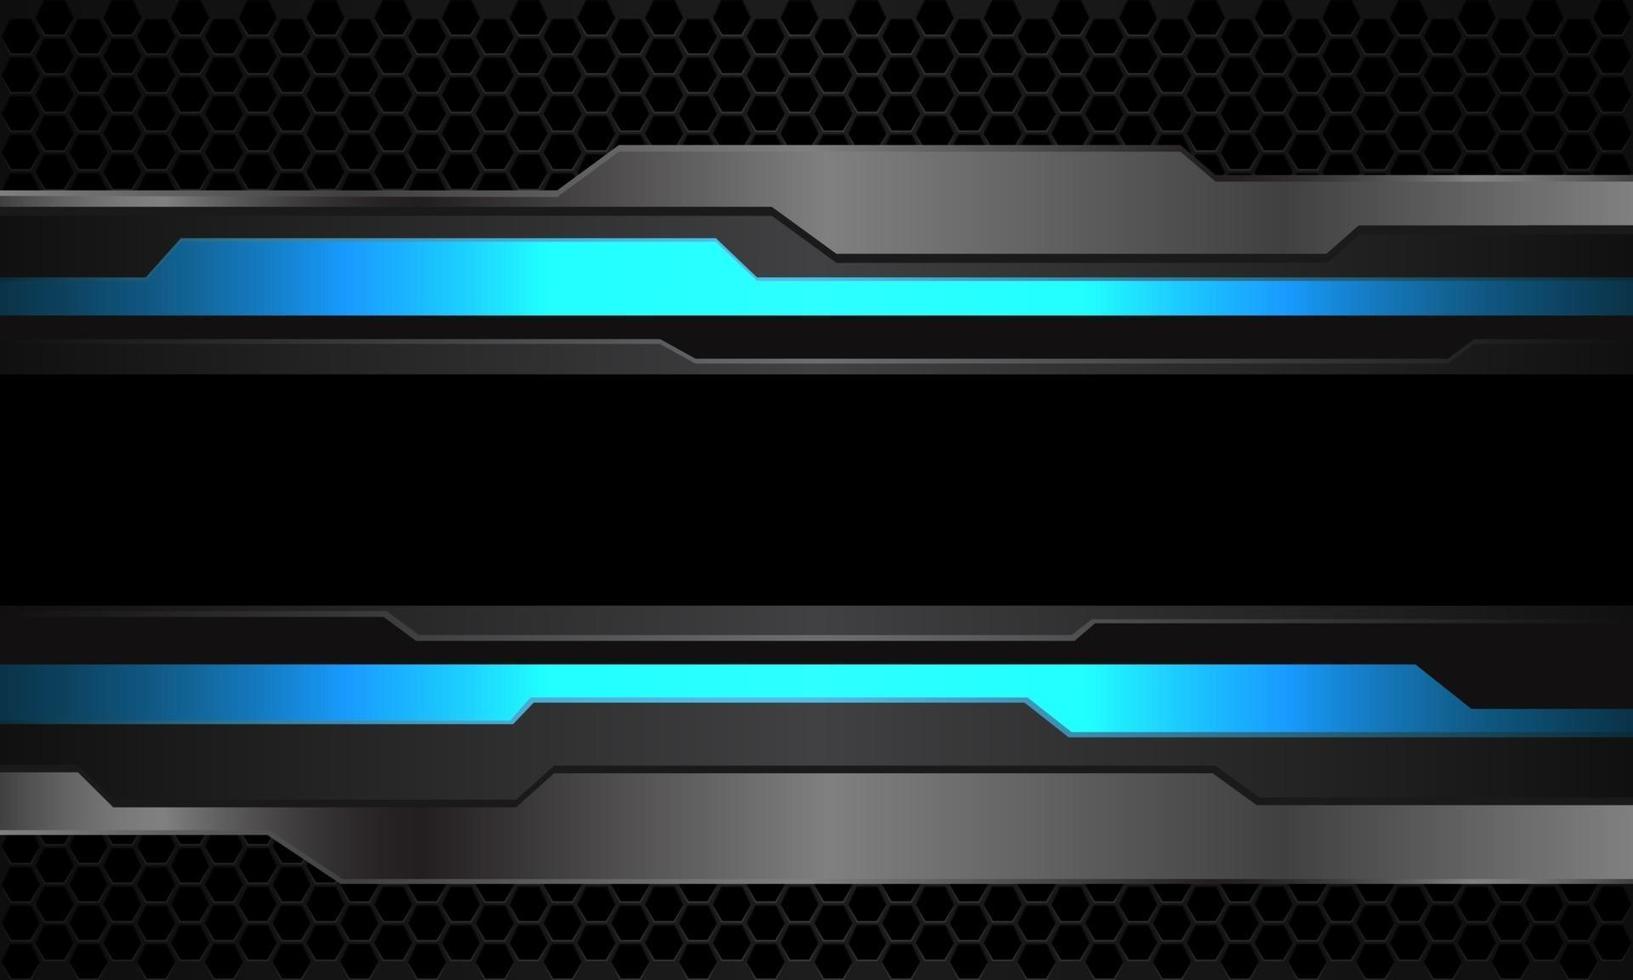 astratto blu neon grigio metallizzato cyber linea nera banner su esagono scuro mesh pattern design moderna tecnologia futuristica sfondo illustrazione vettoriale